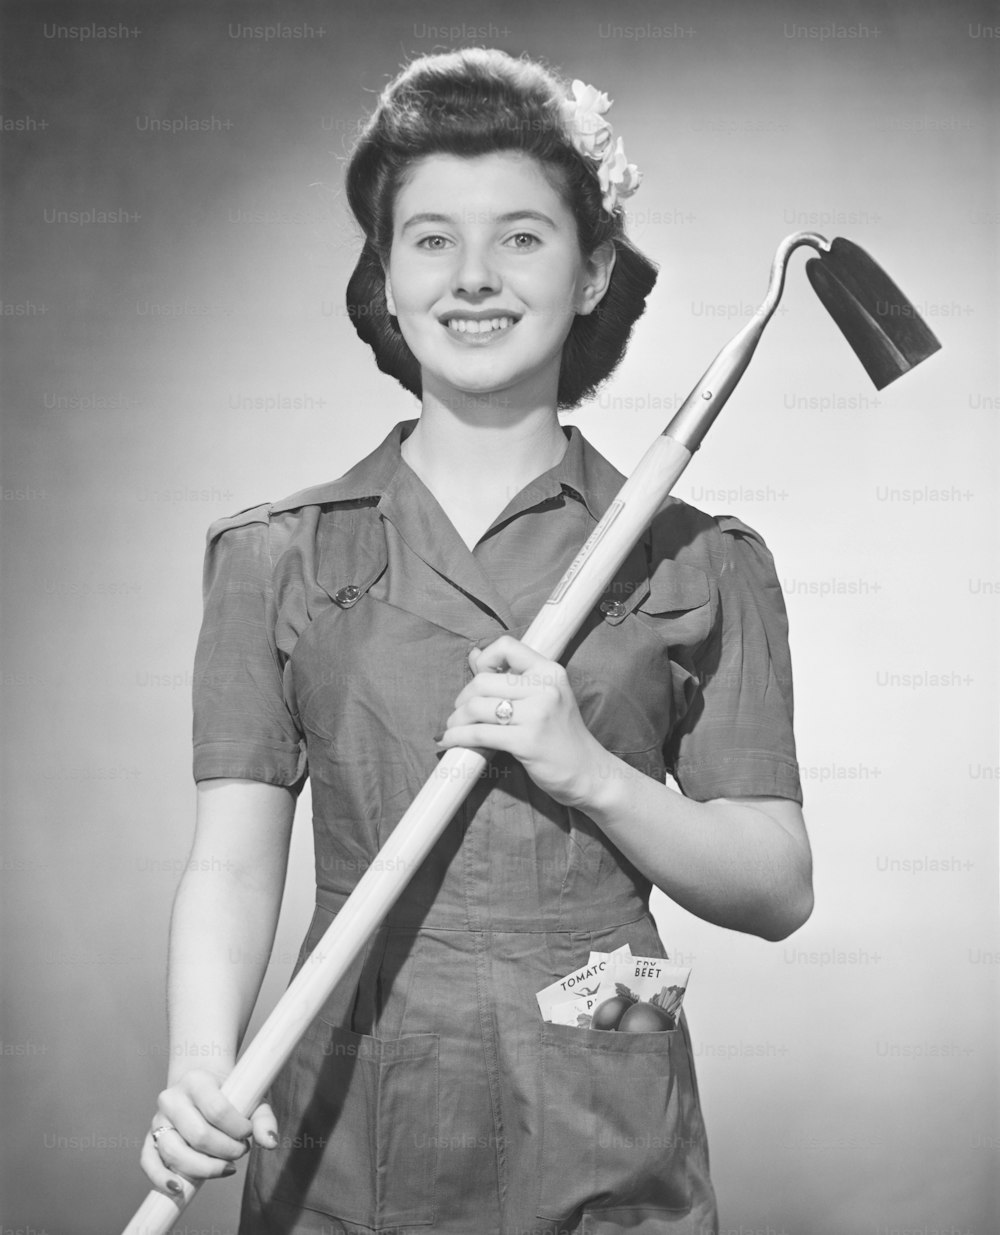 Una mujer con uniforme sosteniendo un palo grande